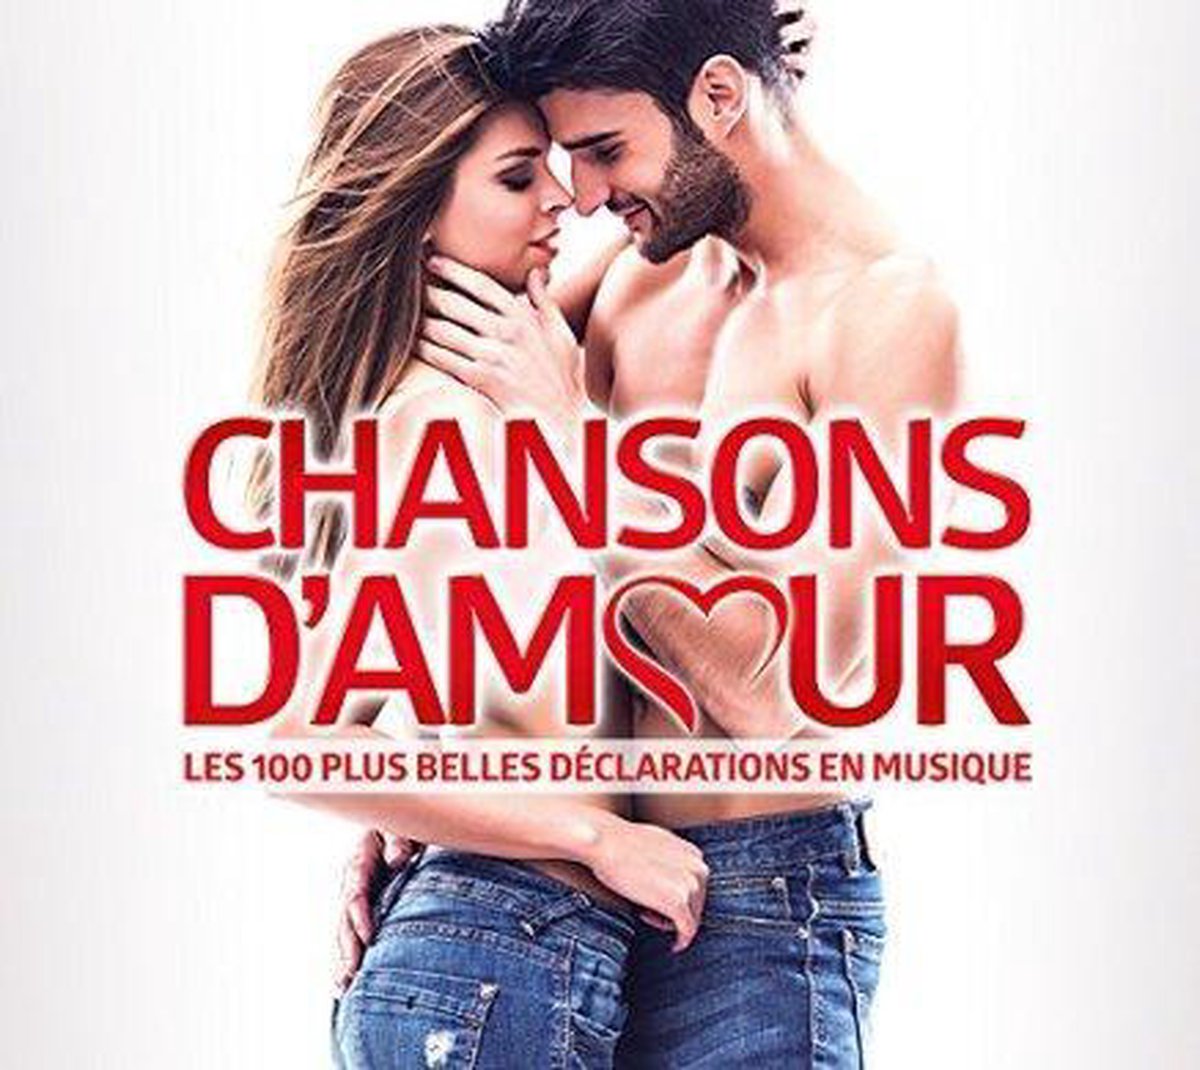 Les 100 Plus Belles Chansons Damour - various artists